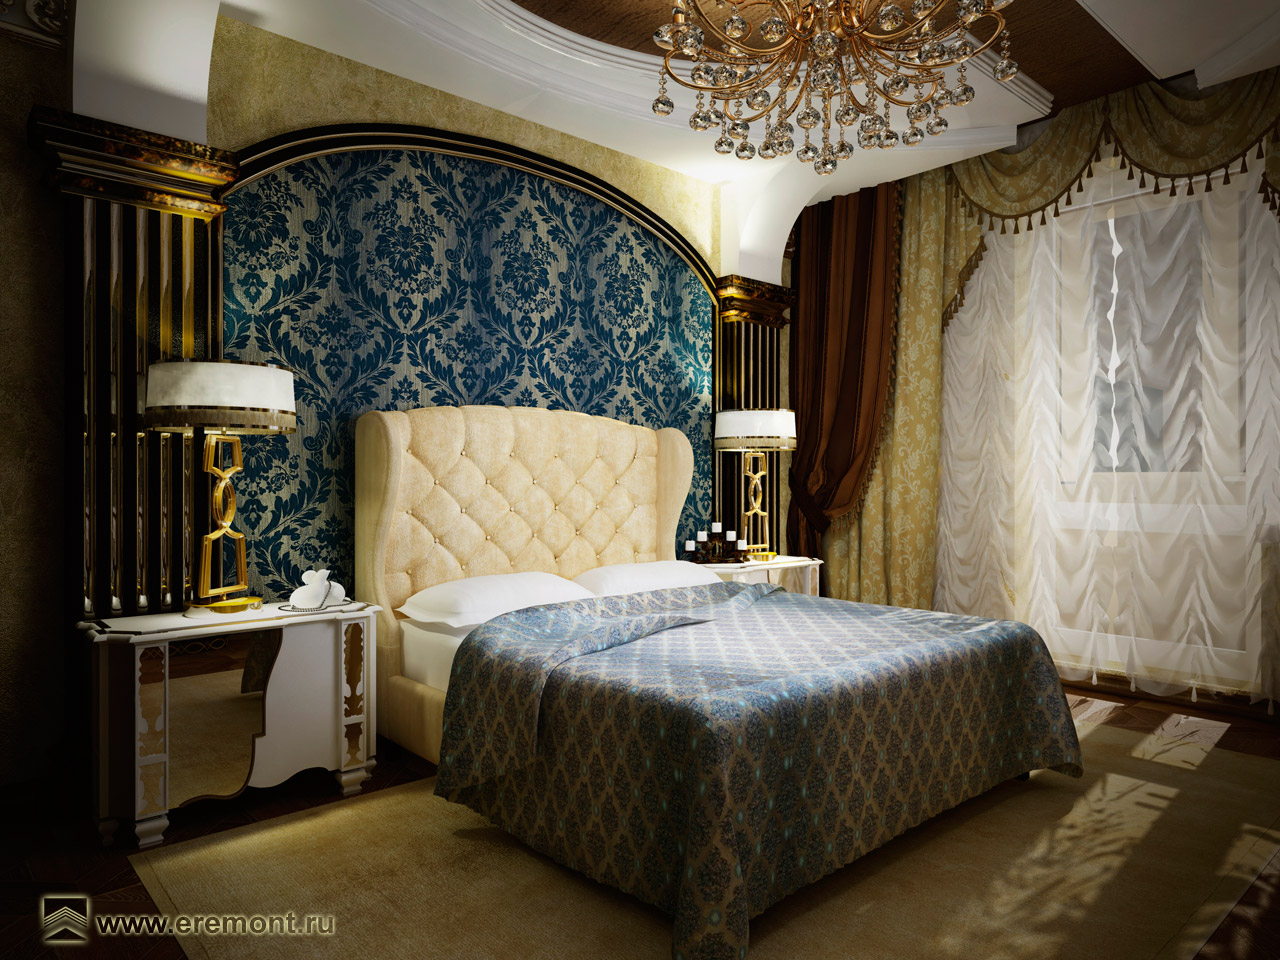 Высокое изголовье кровати гармонирует с текстильными обоями на стене